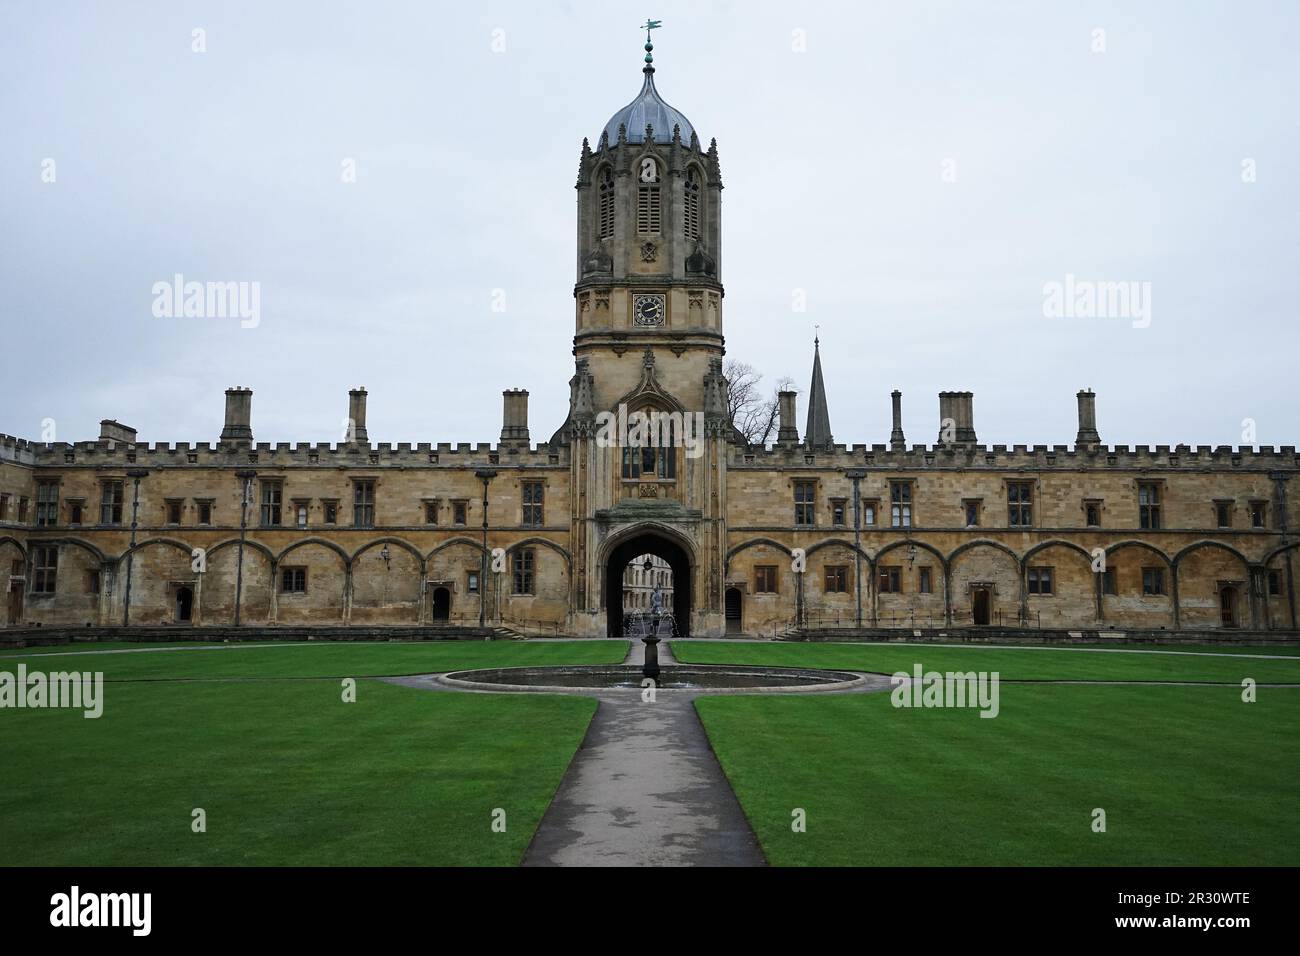 Externe europäische Architektur und Gebäudedesign des Tom Tower of Christ Church - Oxford University, England Stockfoto